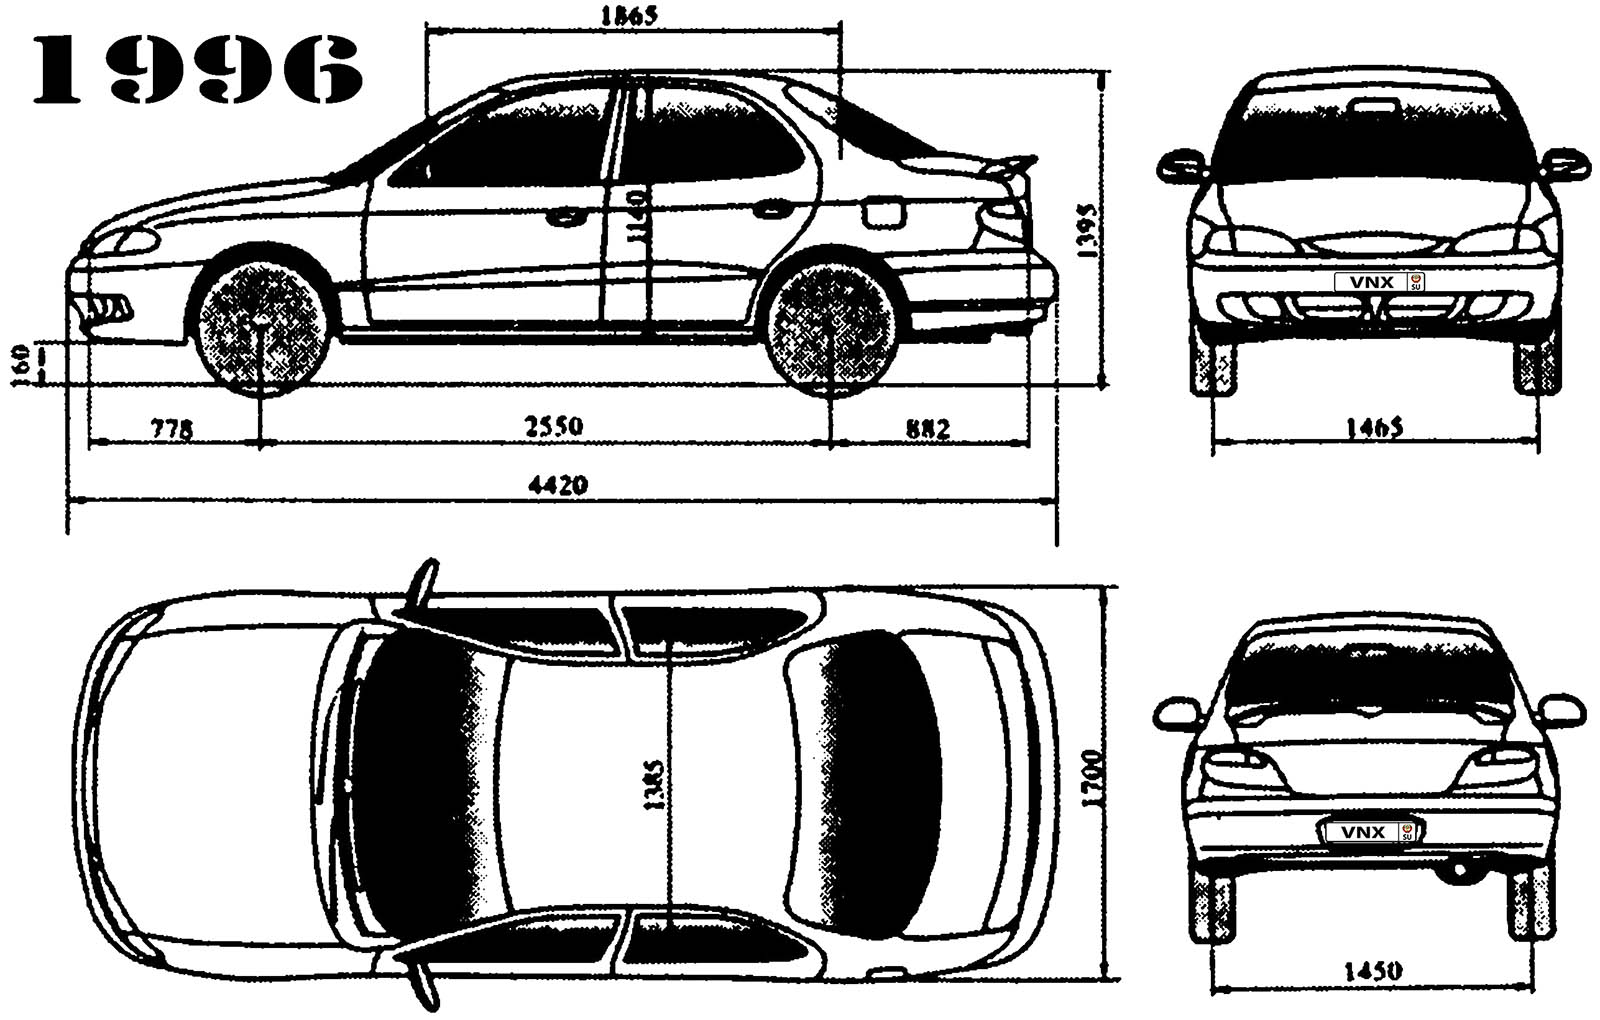 Габаритные размеры Хёндэ Элантра 1996-2001 (dimensions Hyundai Elantra Mark II)